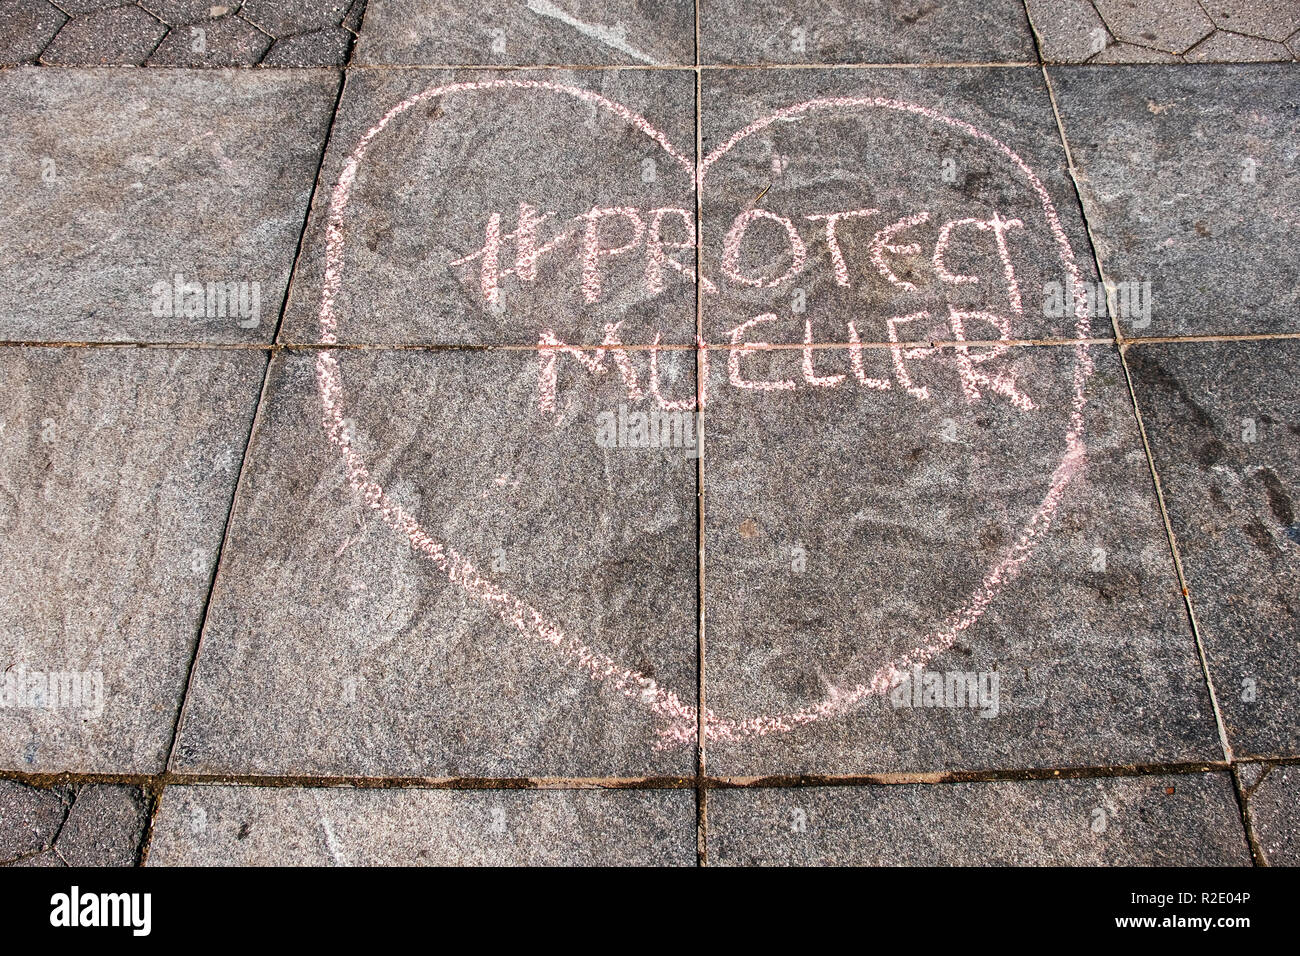 Die Kreide schreiben ion Washington Square Park drängt Leute, die Robert Mueller Ermittlungen gegen Trumpf zu schützen. Stockfoto